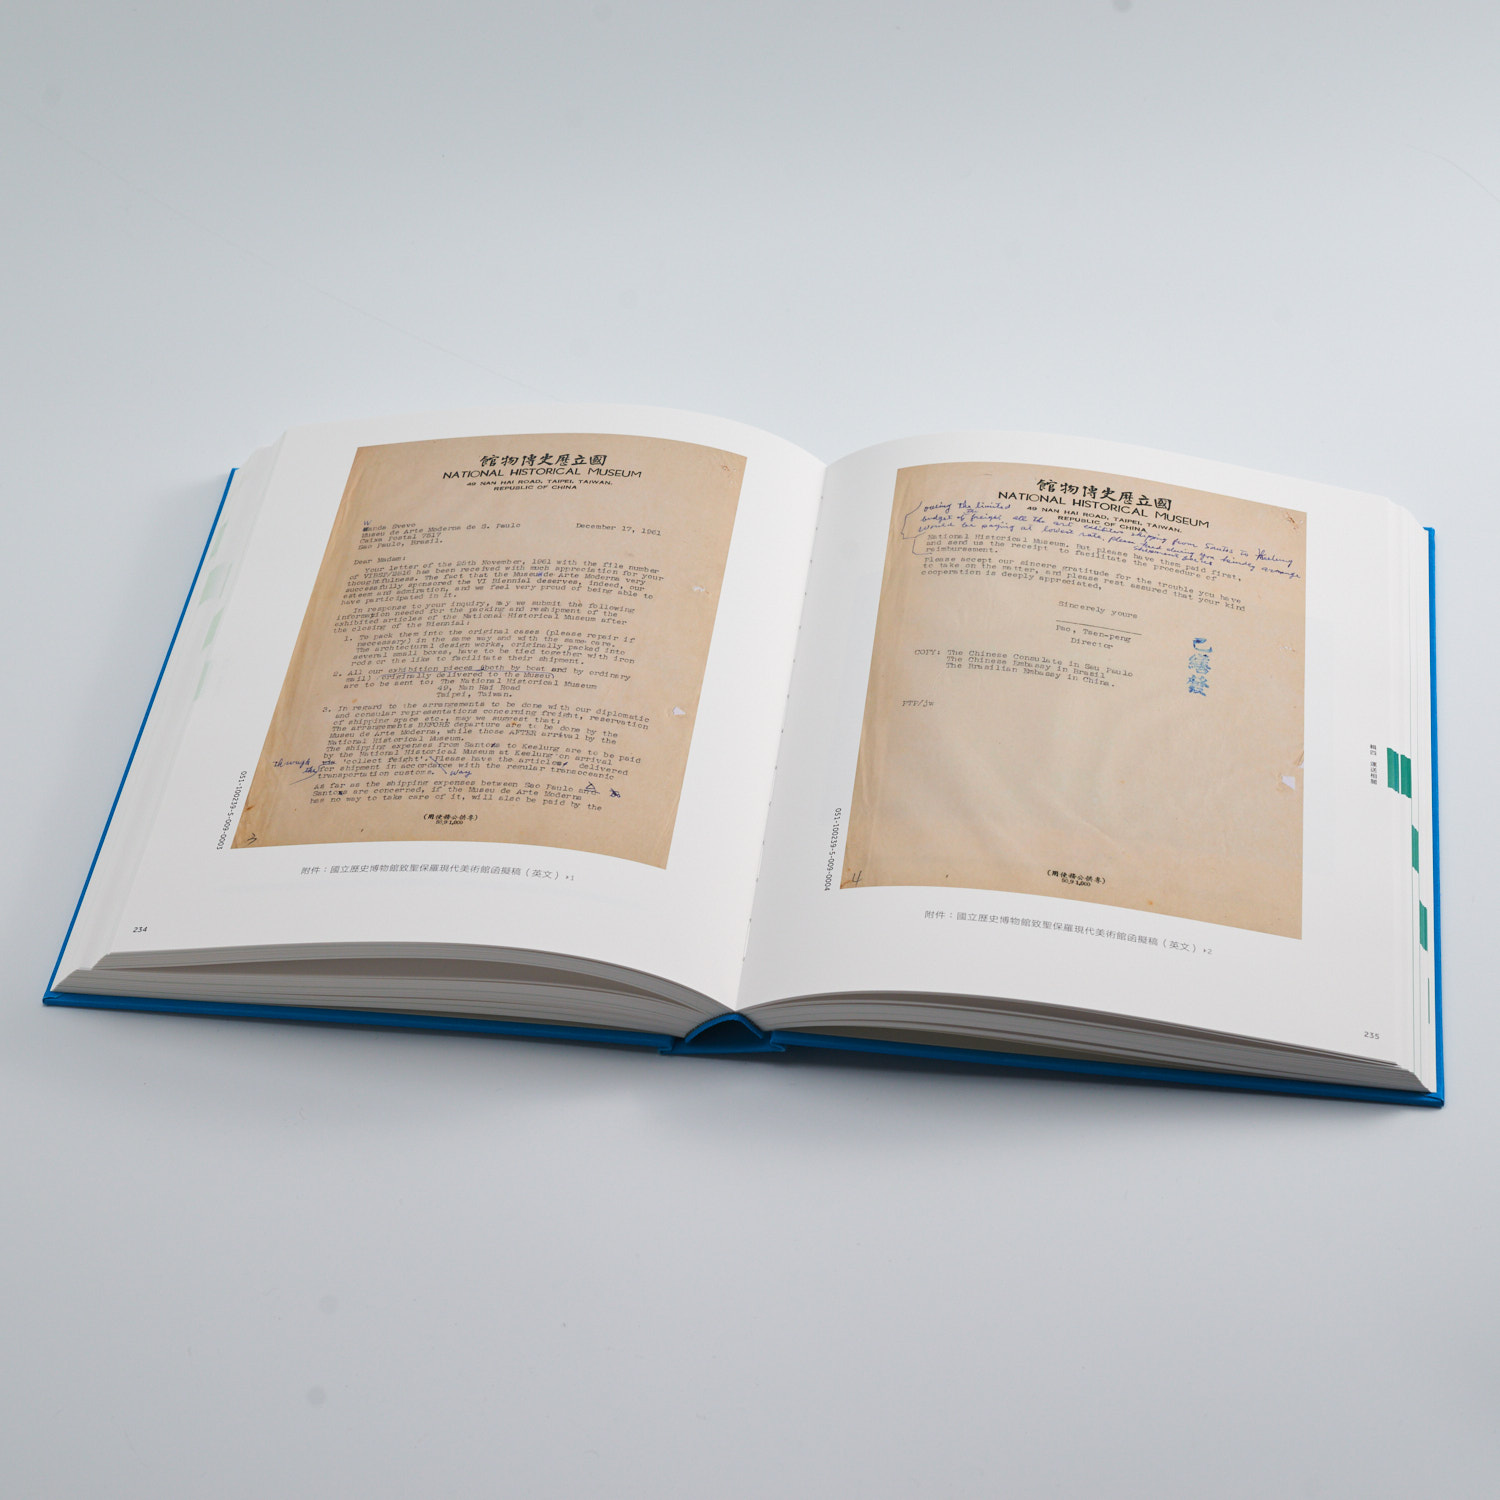 拓開國際─國立歷史博物館與巴西聖保雙年展檔案彙編Ⅱ(1959-1968) The NMH and the São Paulo Biennial: Selected Archives II: 1959-1968